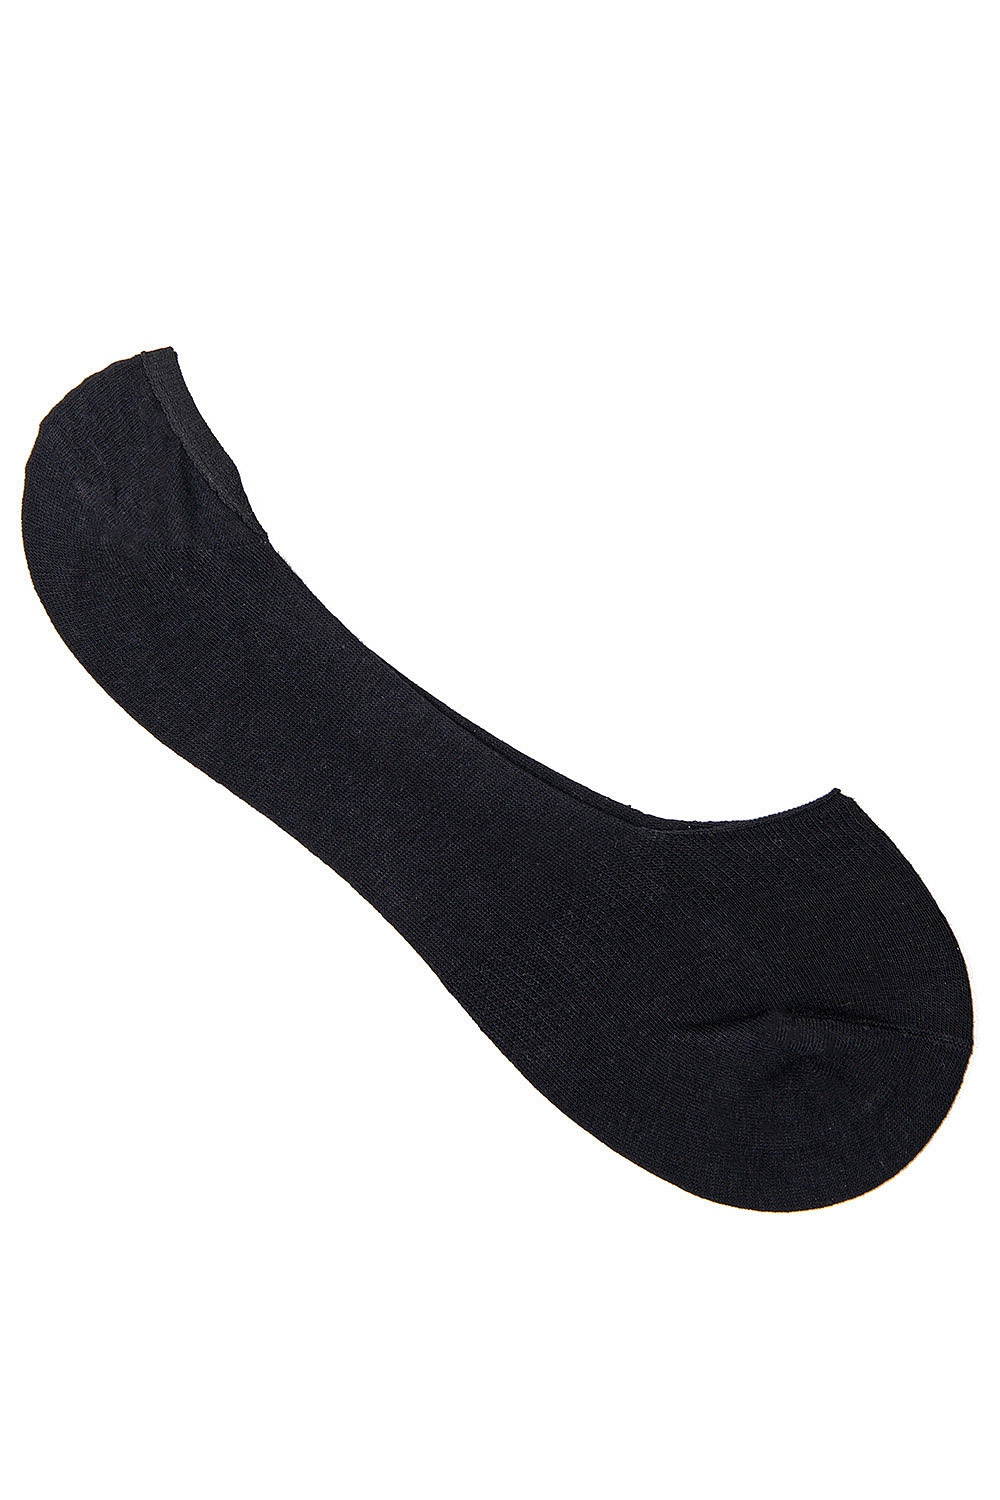 Socks black 0